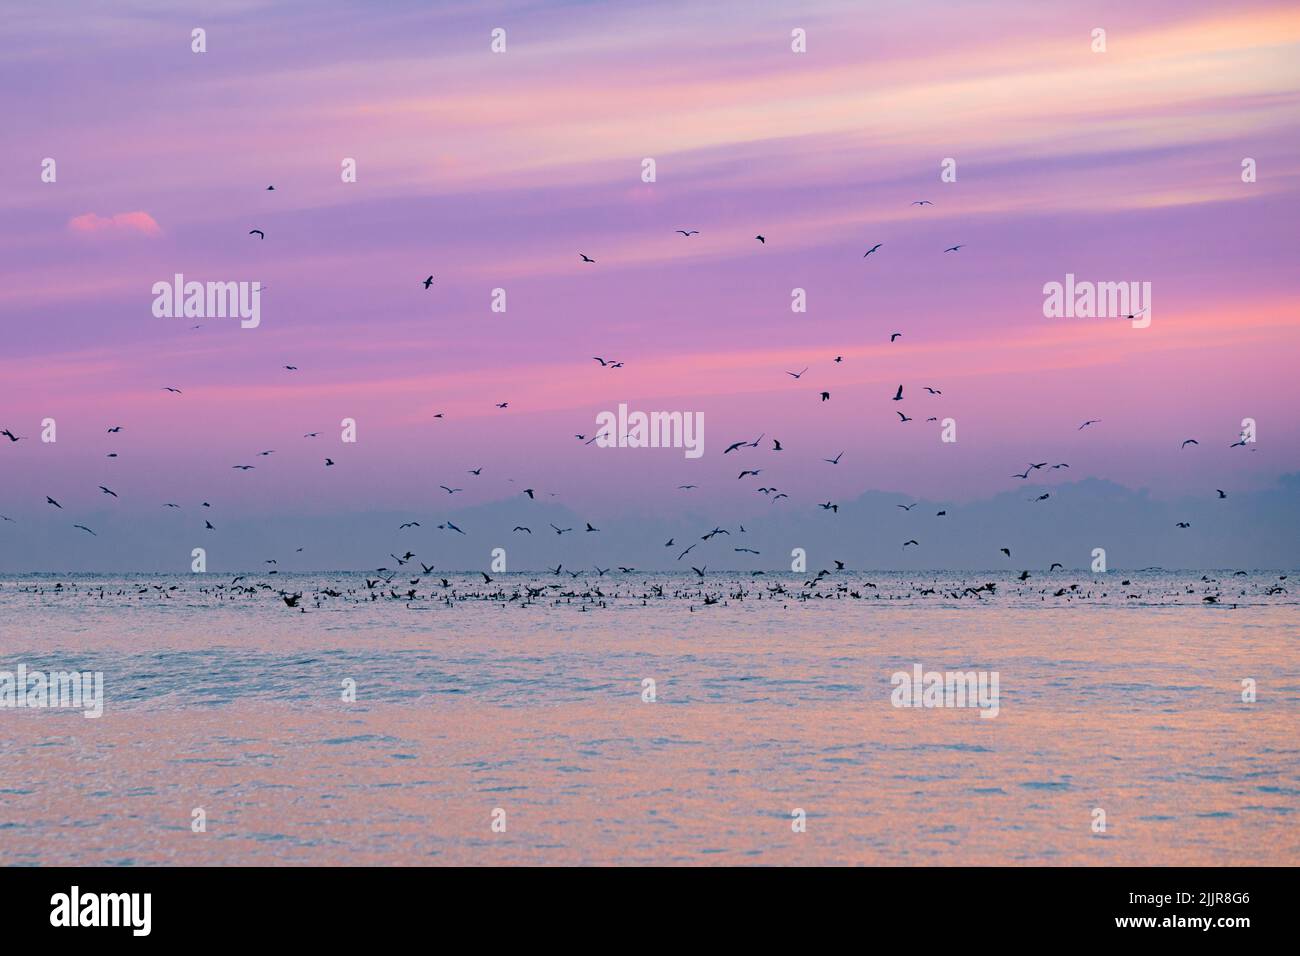 Une belle vue d'un troupeau d'oiseaux volant au-dessus de la mer pendant le coucher de soleil rose Banque D'Images